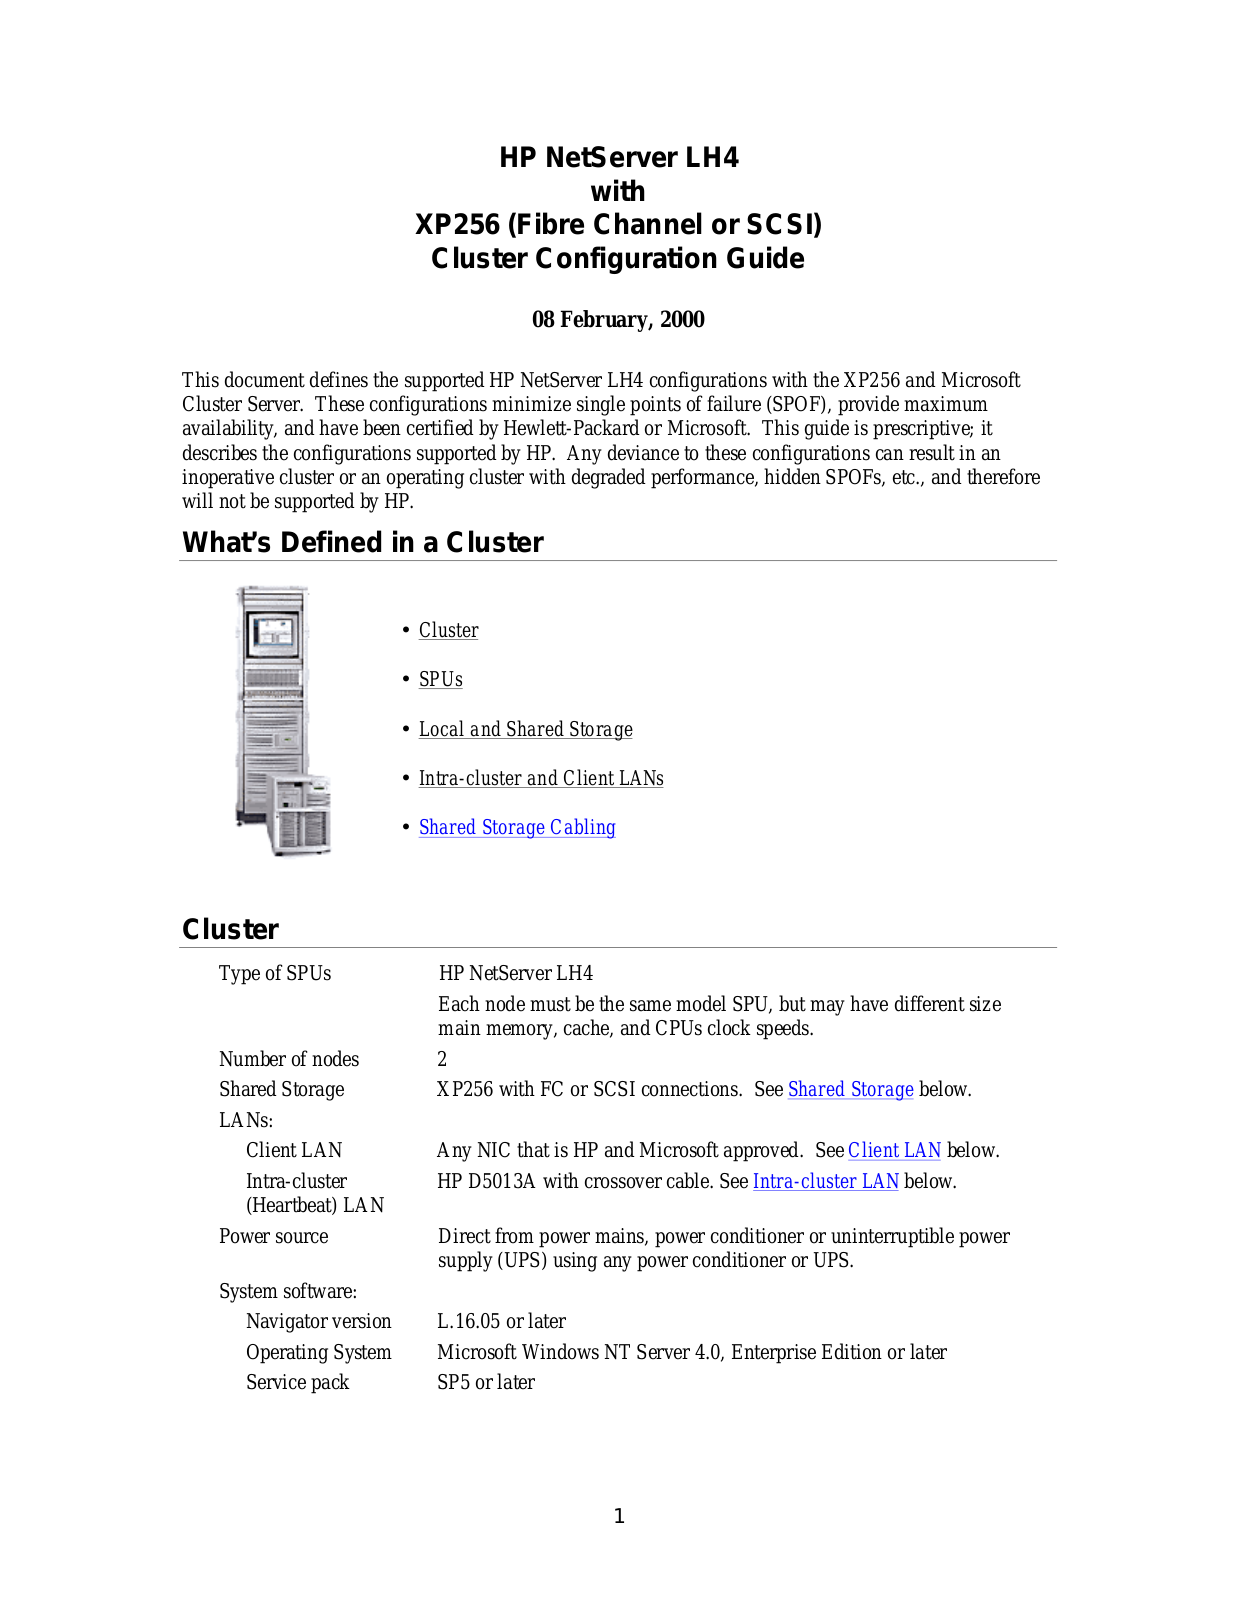 HP LH4 User Manual